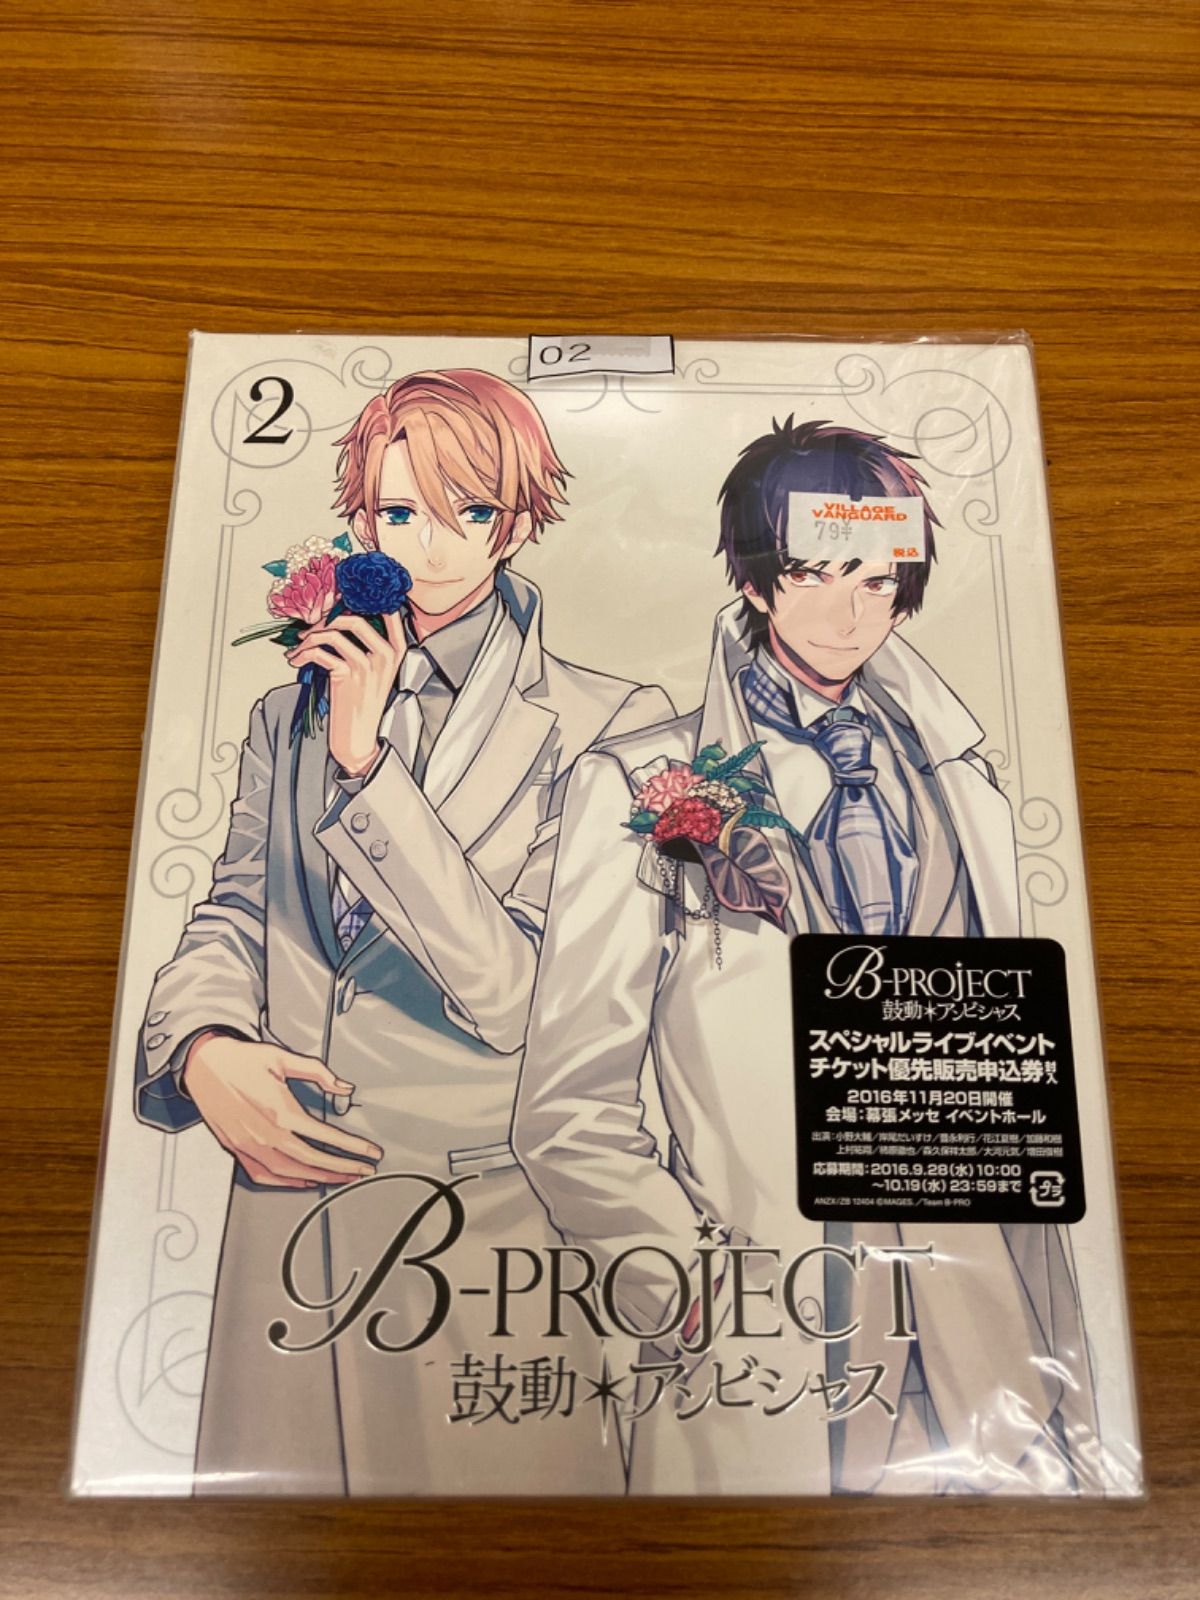 B-project 鼓動アンビシャス特典CD